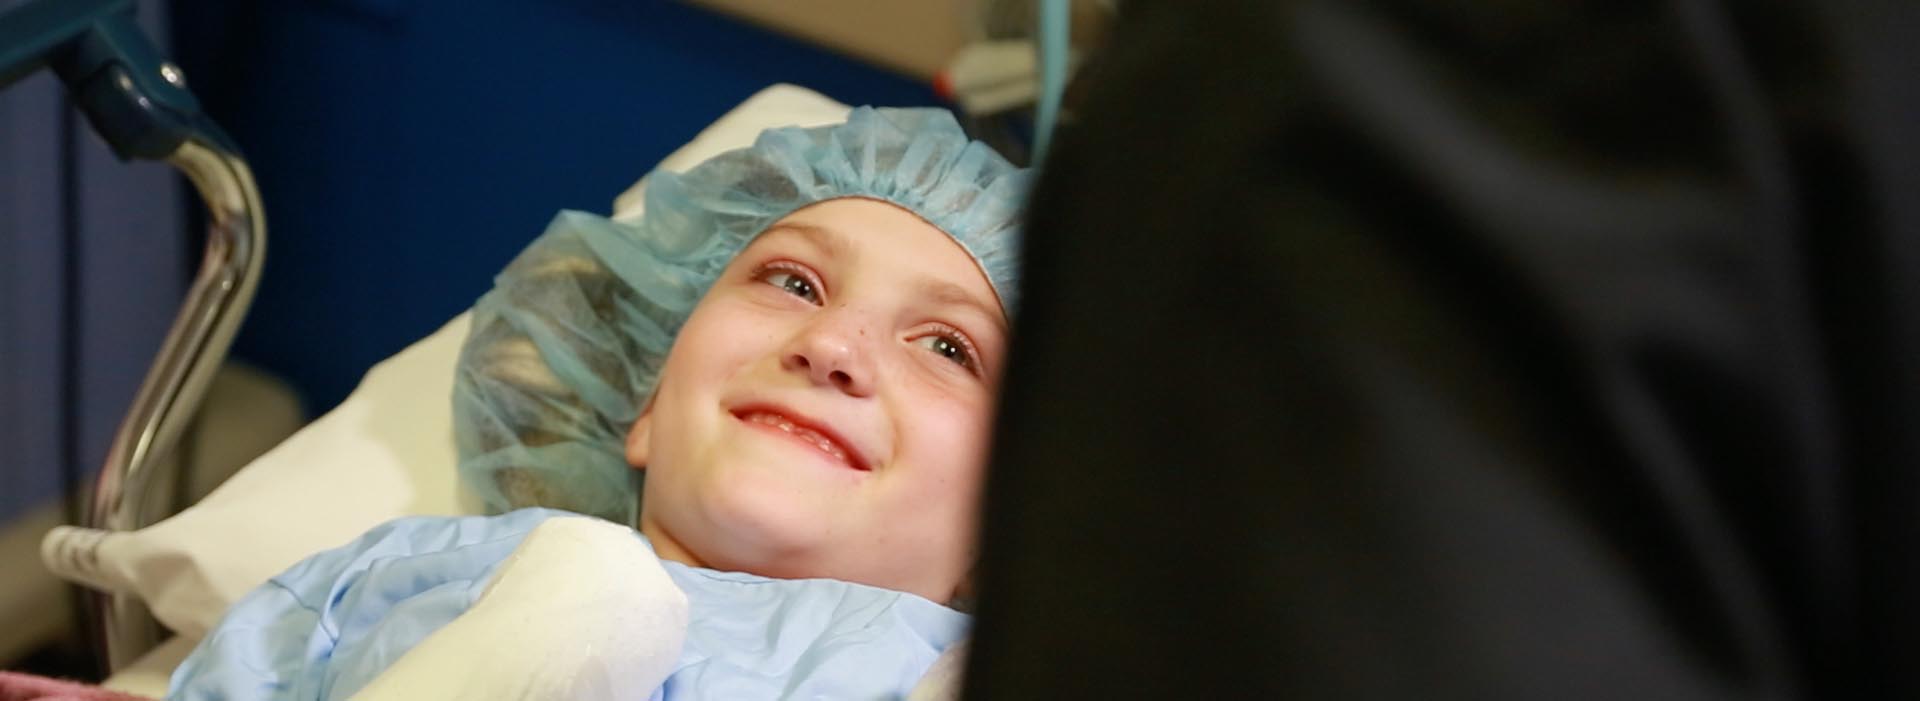 Ein kleiner Kinderpatient lächelt jemandem außerhalb des Rahmens zu